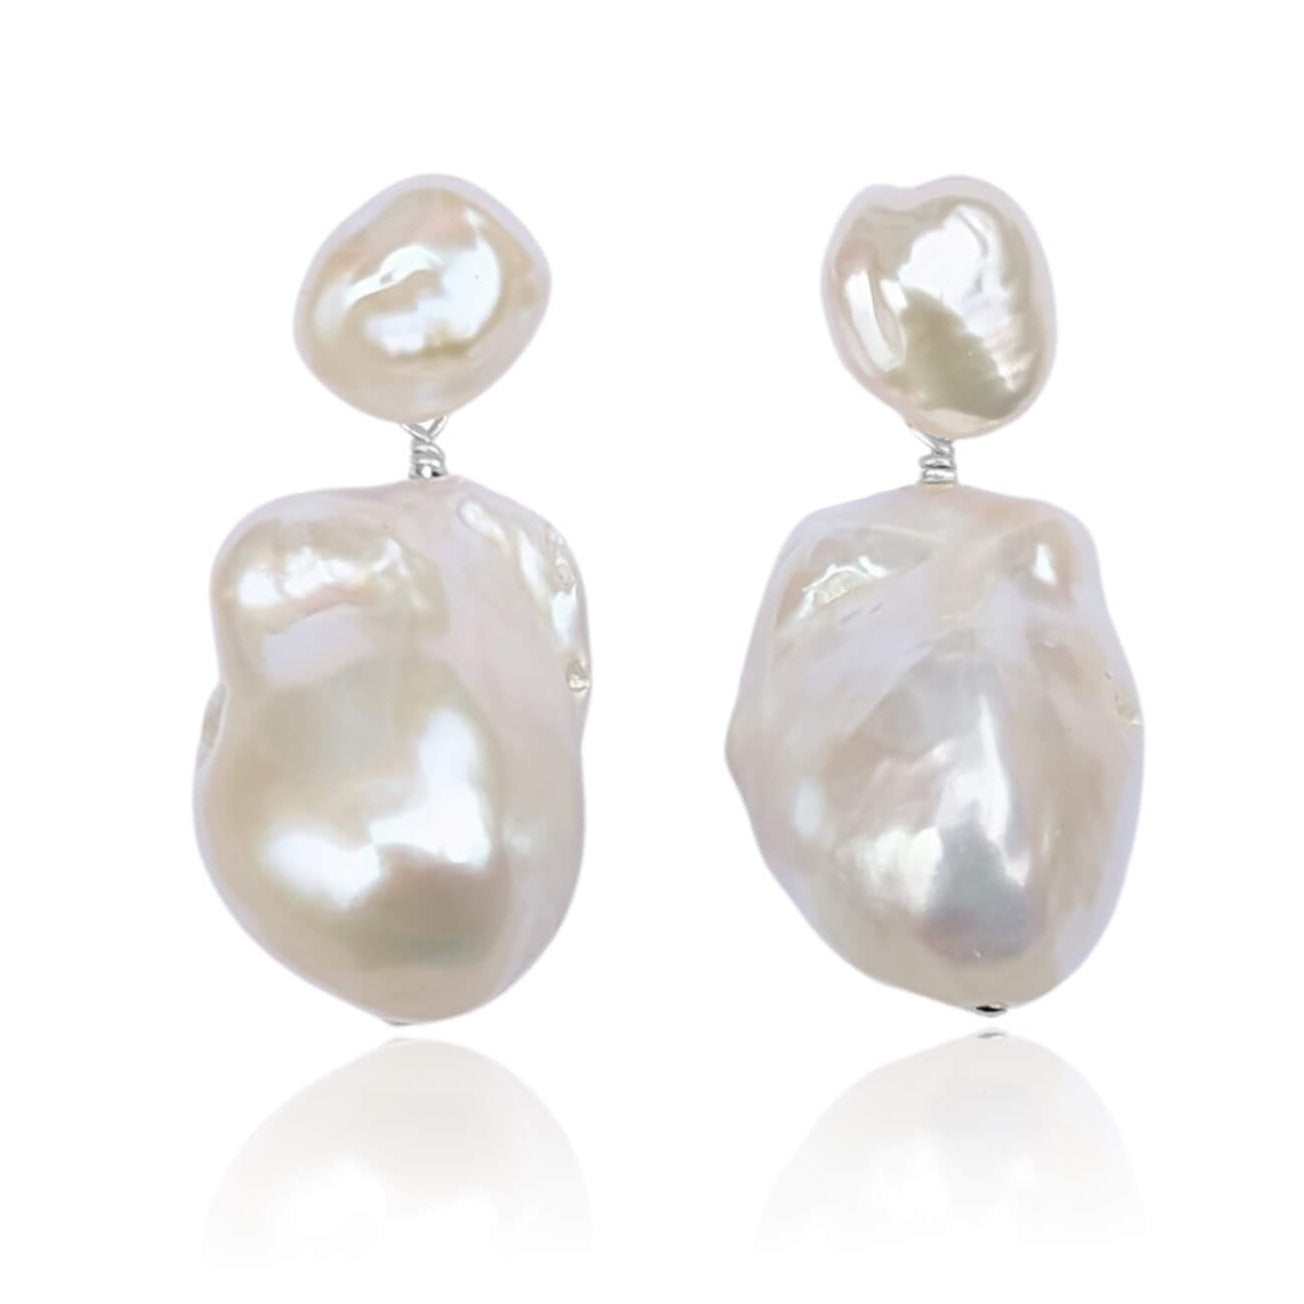 Large fireball pearl stud drop earrings in sterling silver